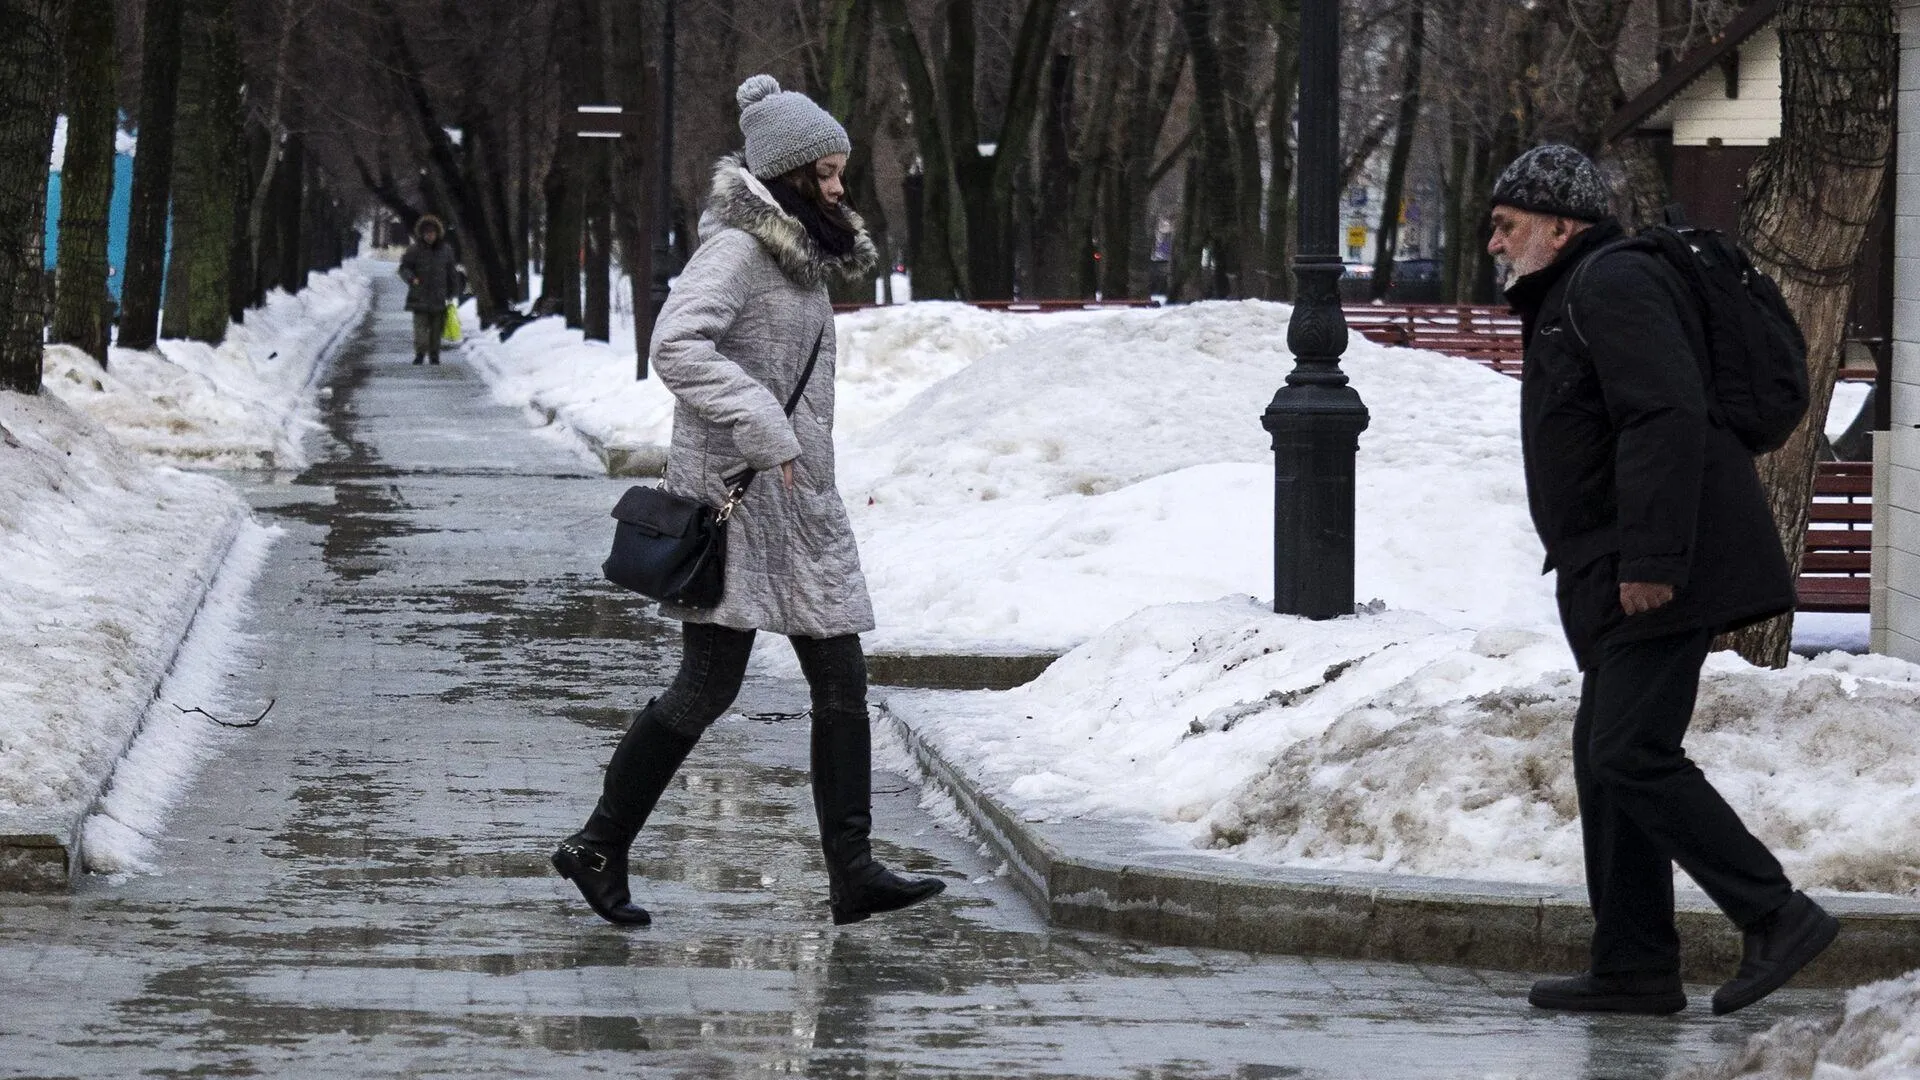 Глава российского города сломал ногу из-за нечищенной дороги у администрации